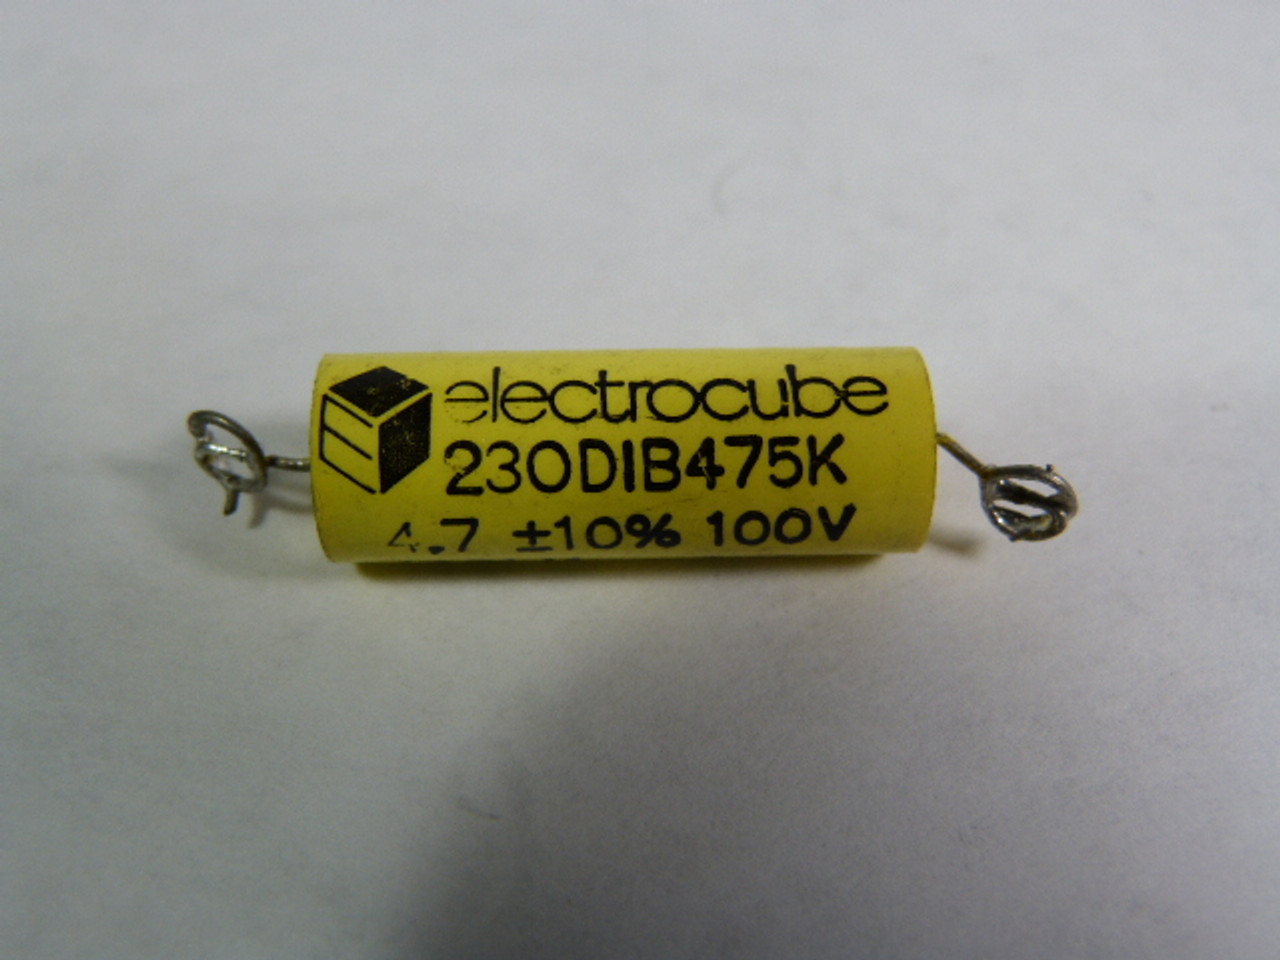 Electrocube 230DIB475K Capacitors 4.7?10% 100V USED